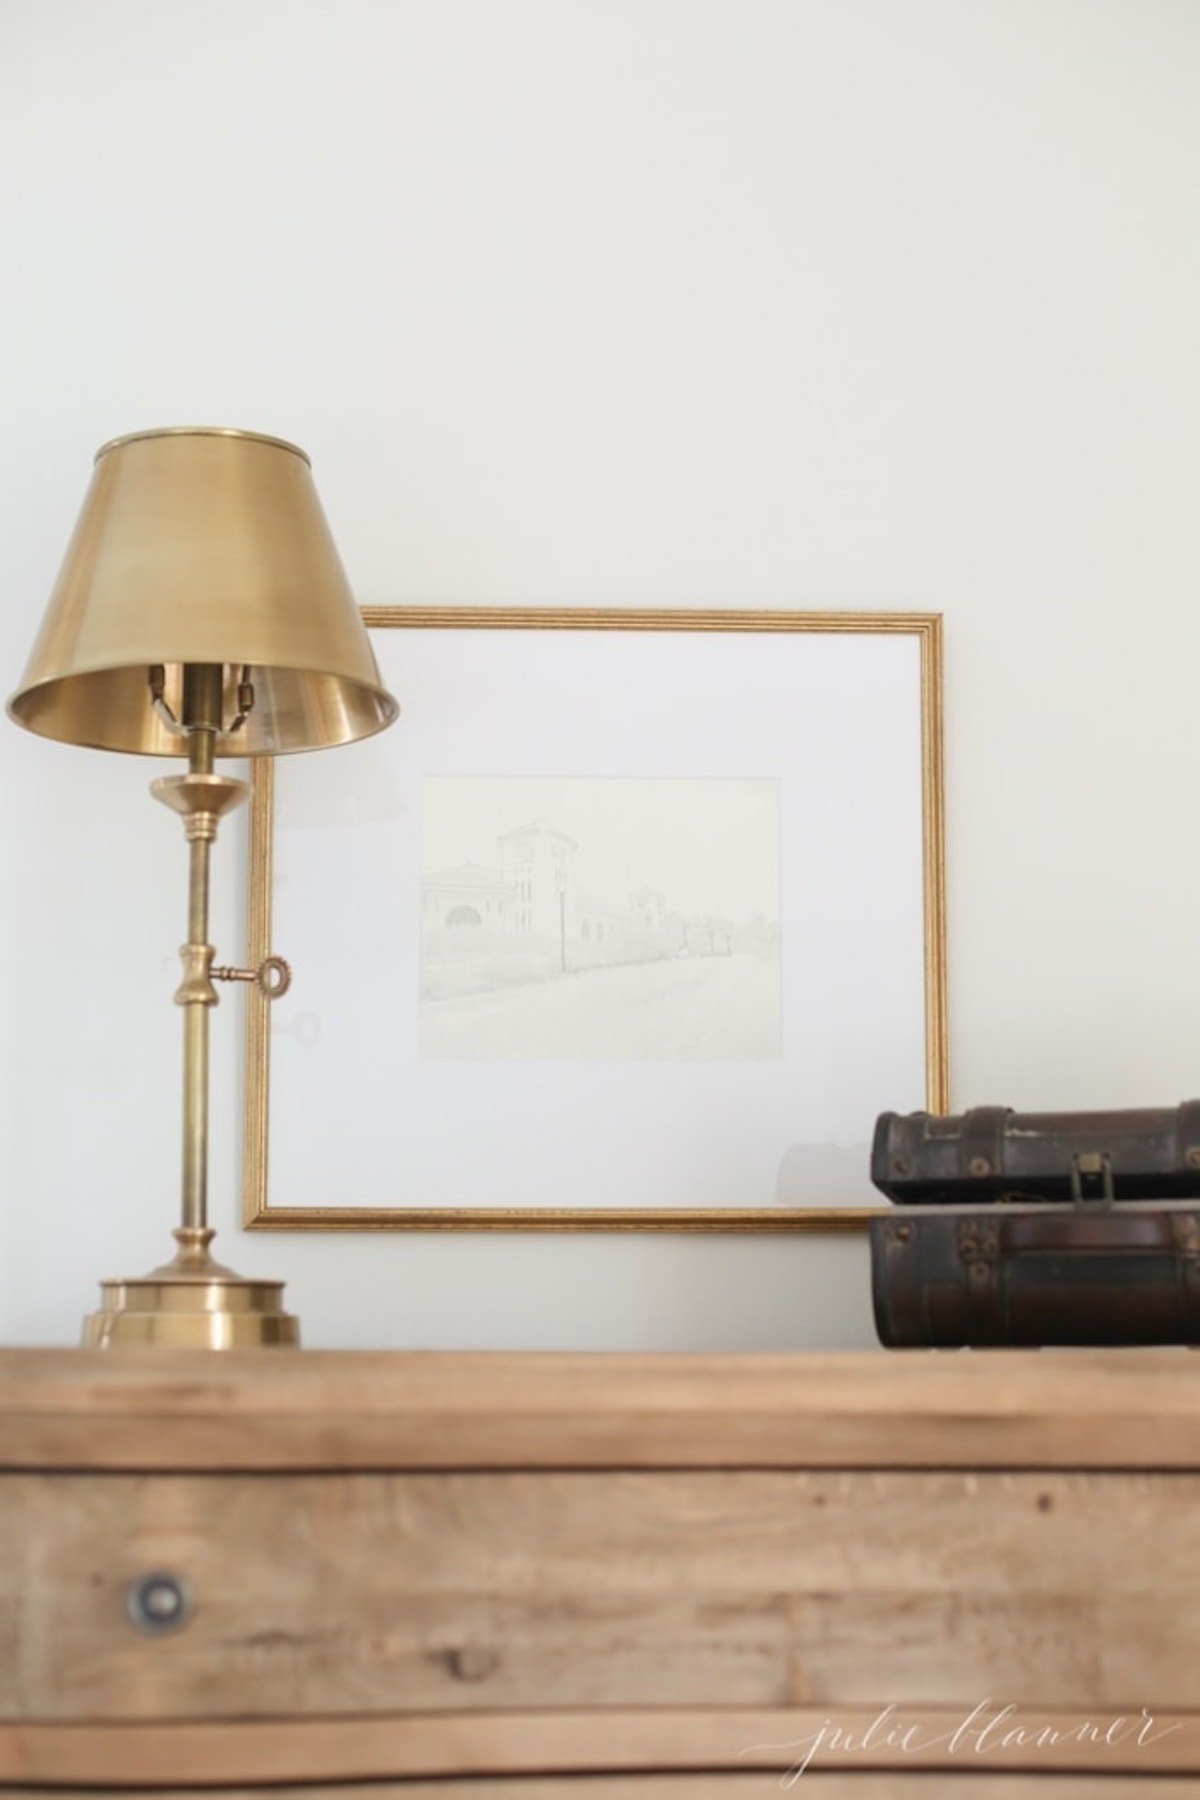 A DIY brass lamp adorning a dresser.